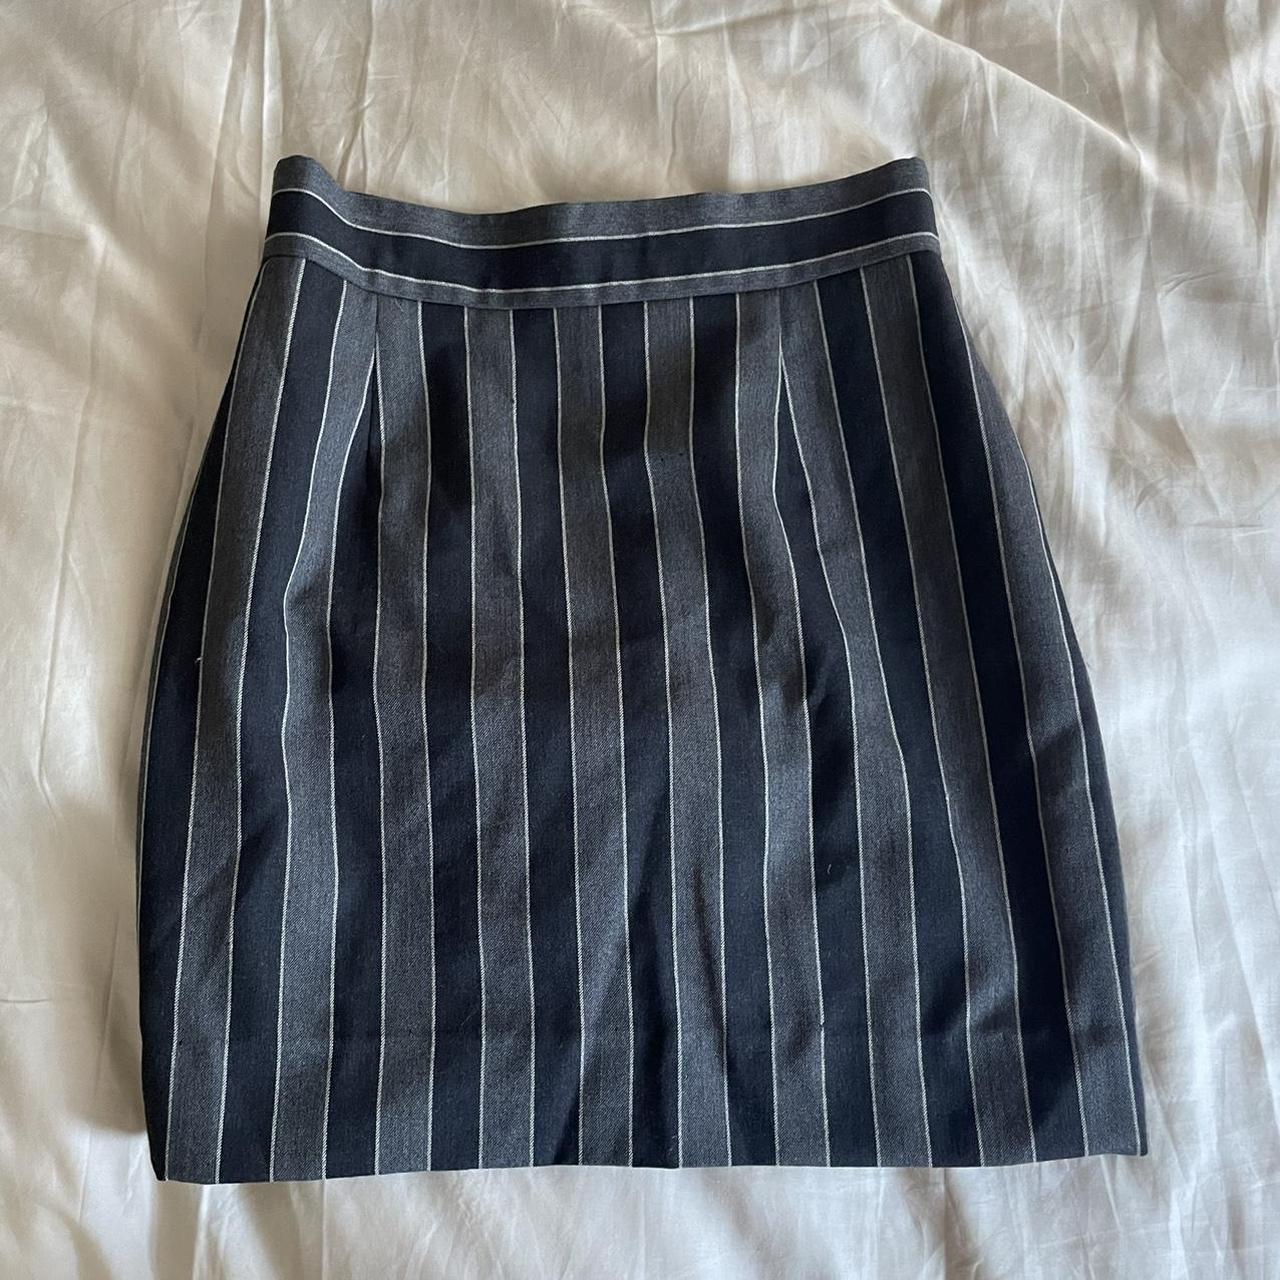 Moschino Cheap & Chic Women's Skirt